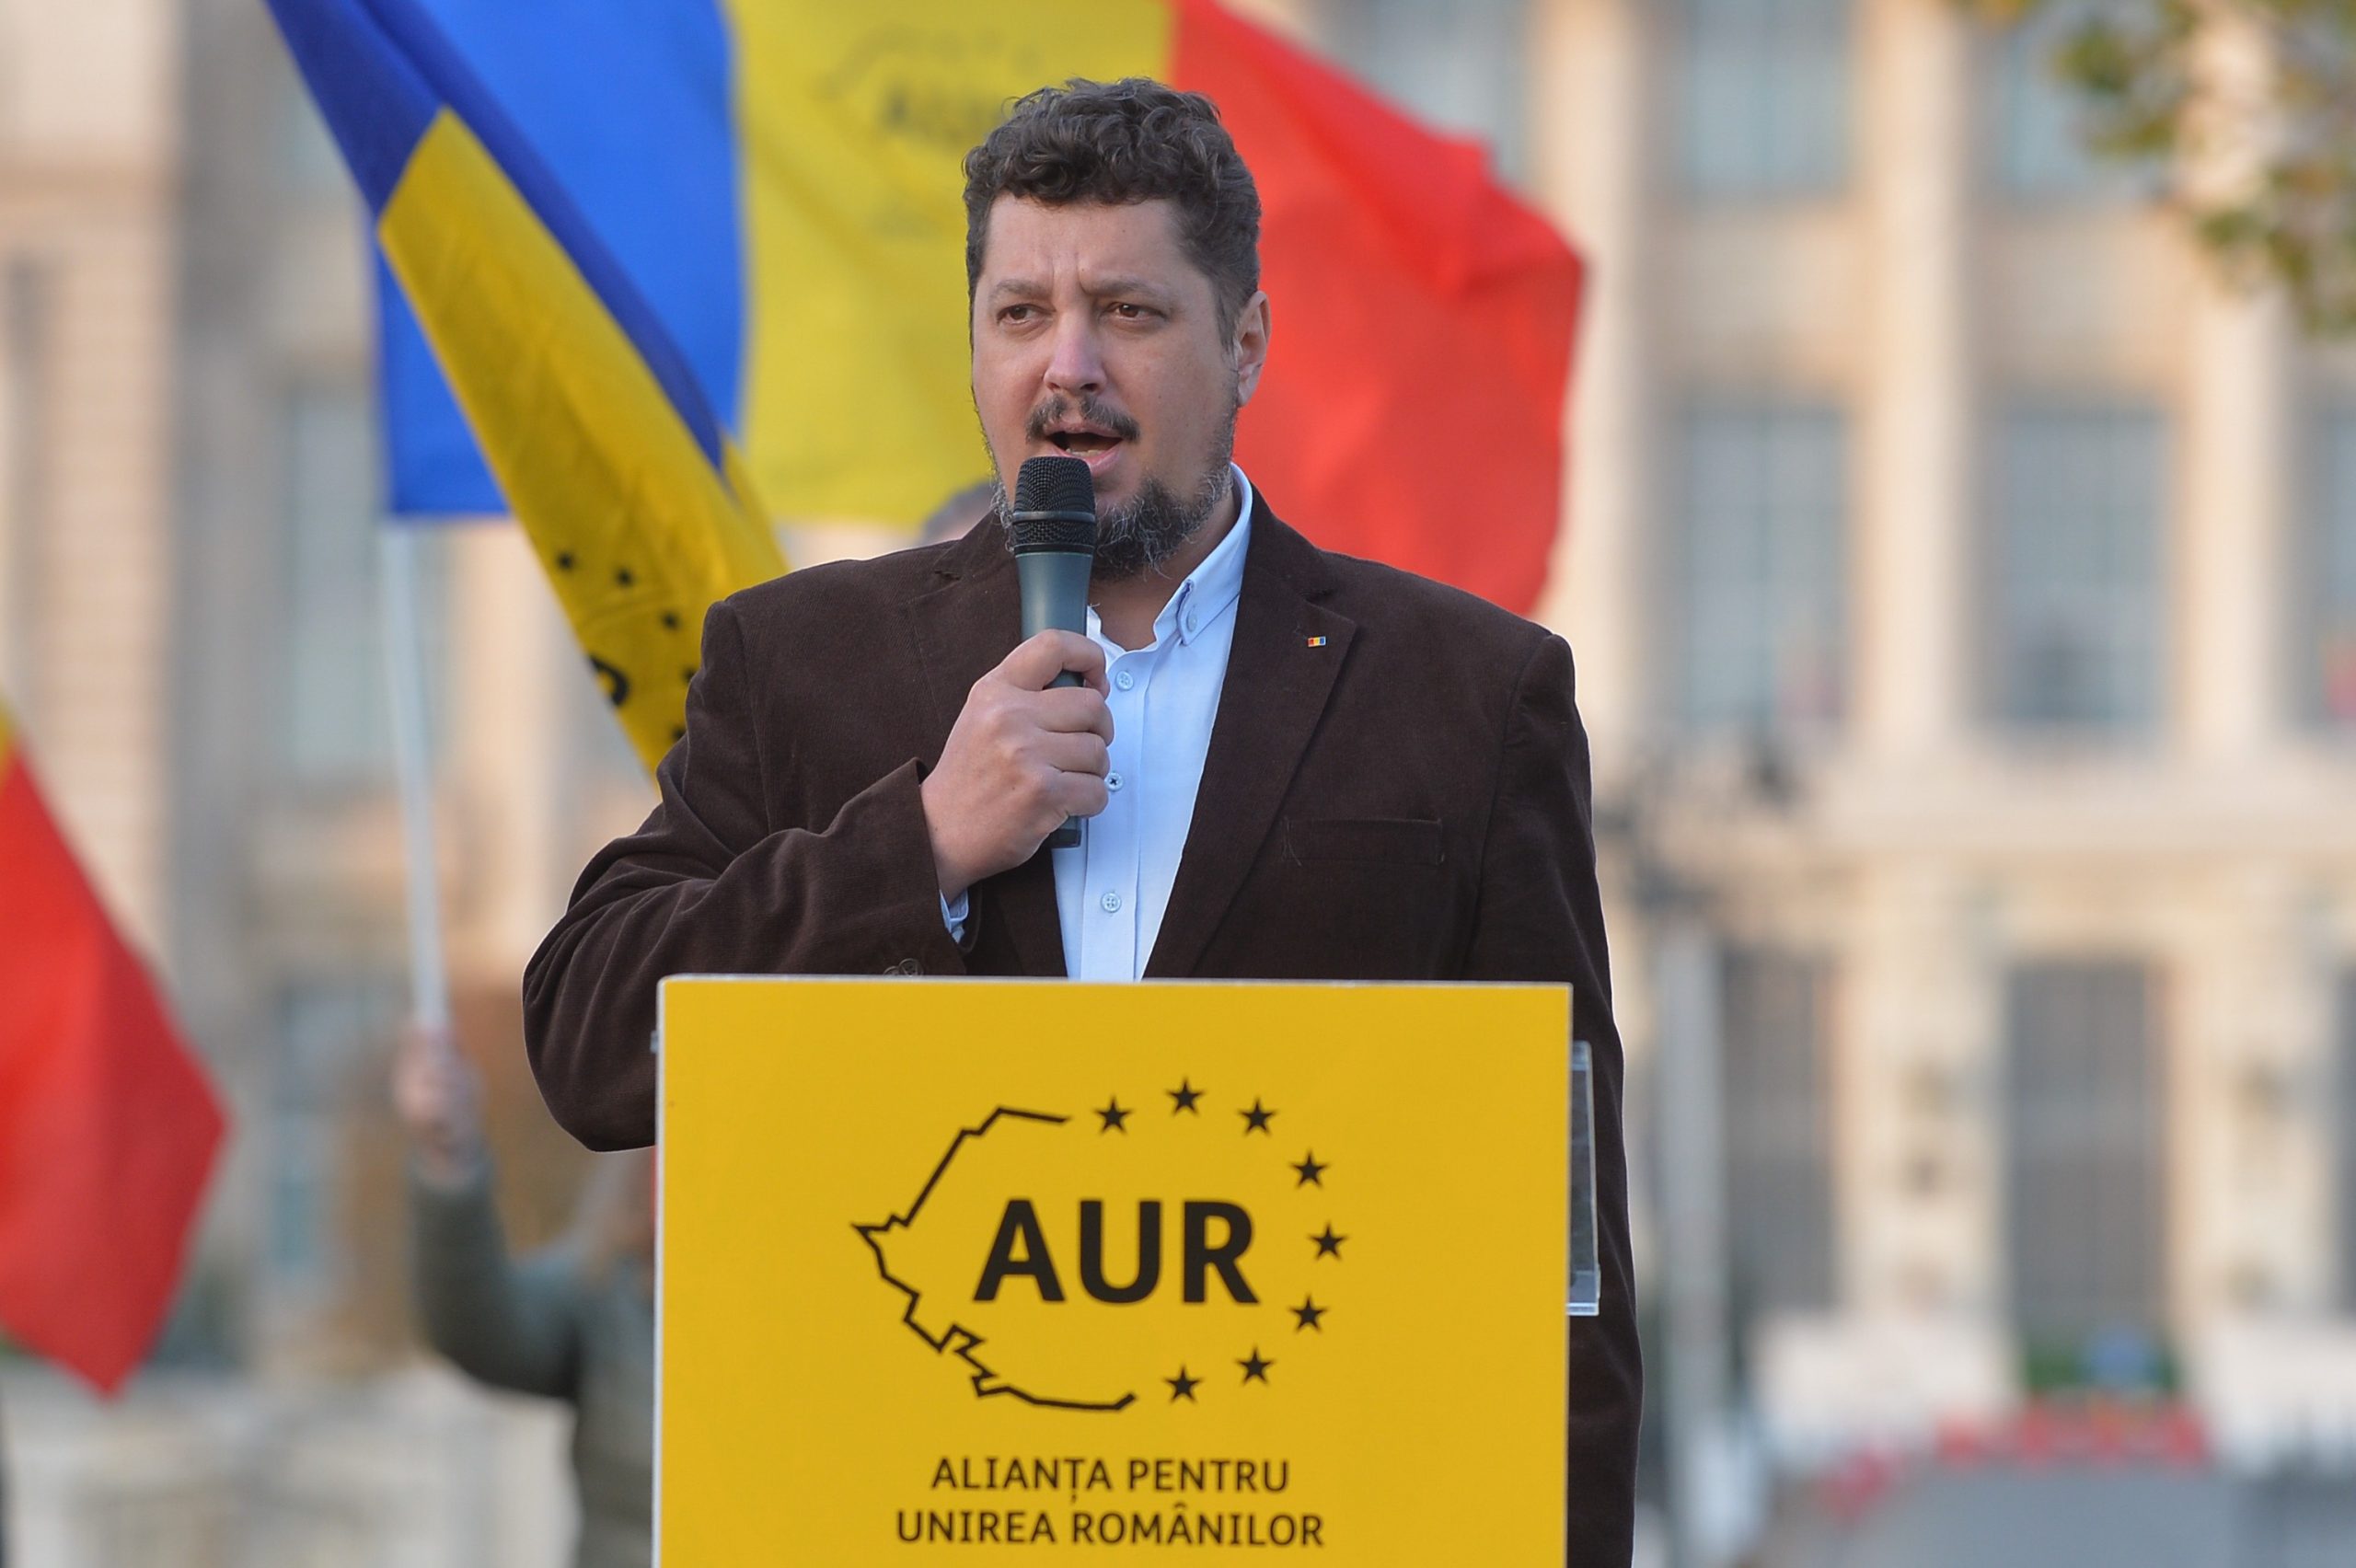 Cine este Claudiu Târziu, copreședinte al partidului AUR: Atacuri la adresa  homosexualilor și susținător al mișcării antiavort